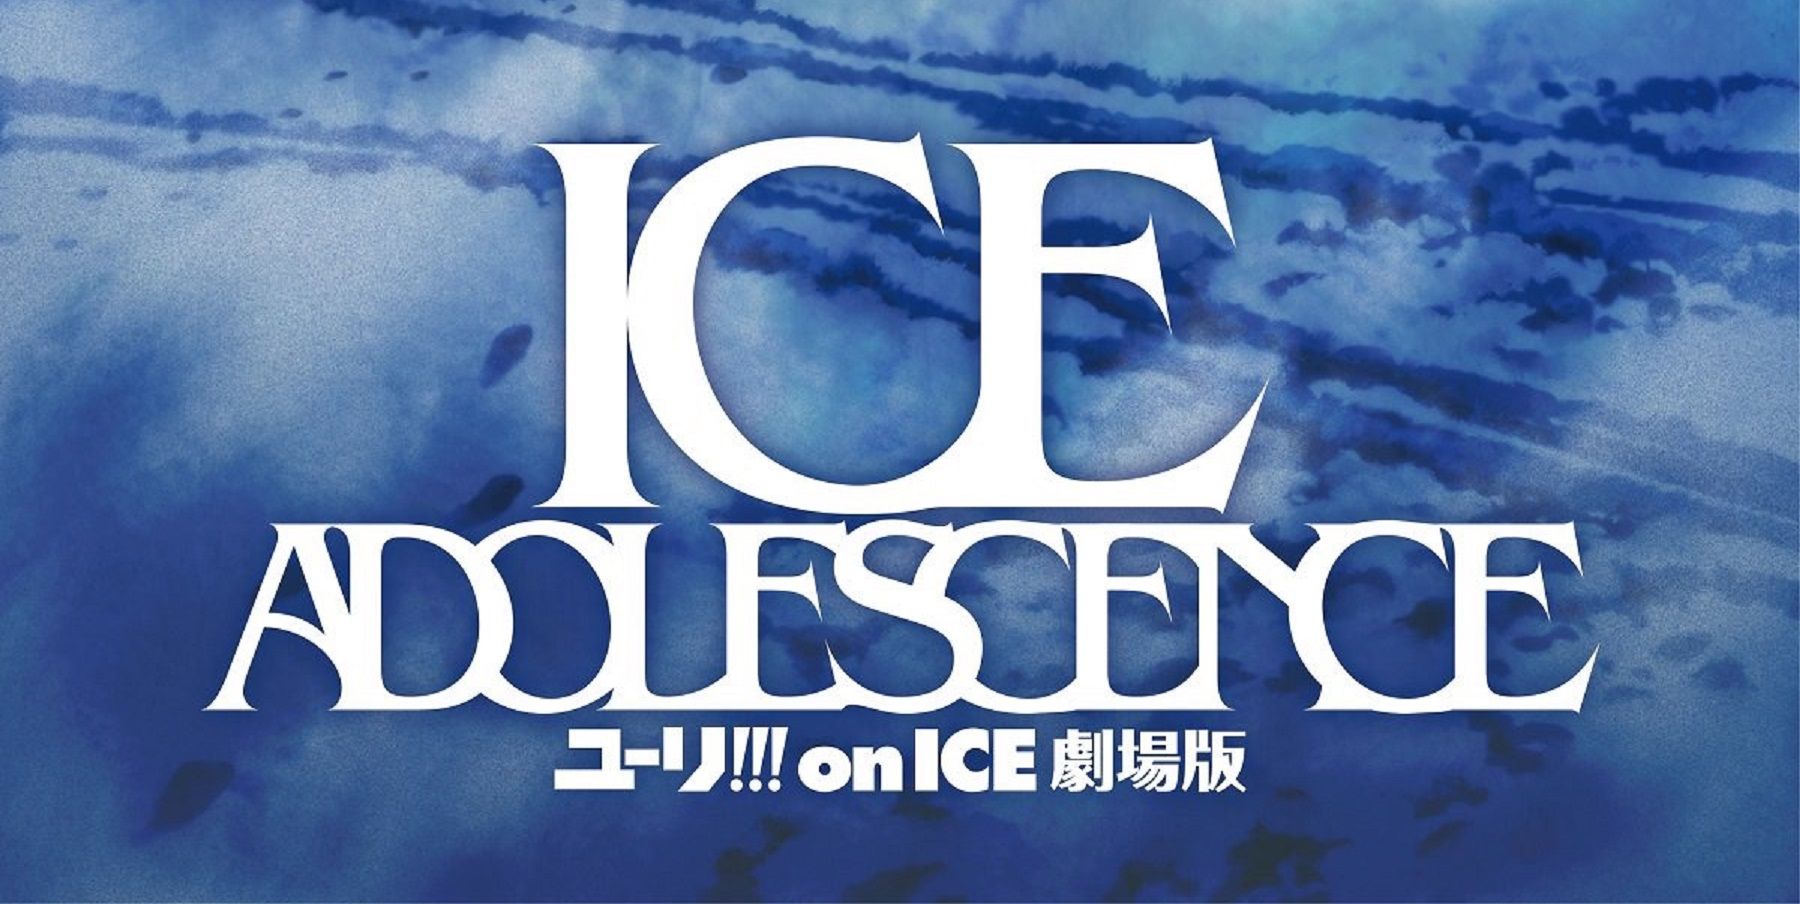 Yuri !!! On Ice The Movie: Ice Adolescence: Co wiemy o filmie do tej pory